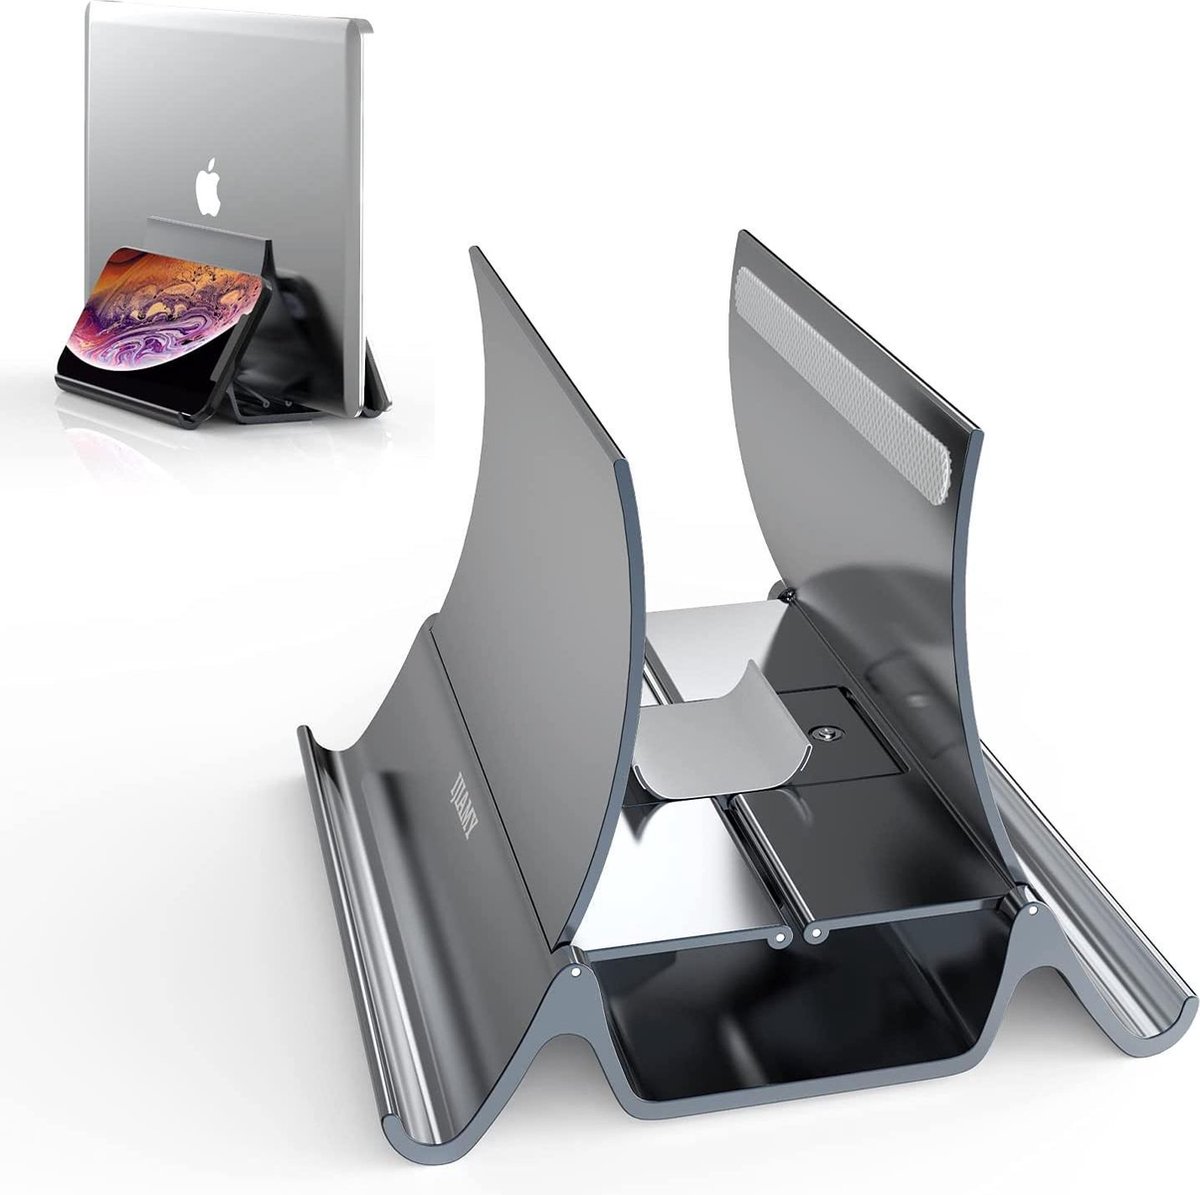 Selwo™ Laptopstandaard verticaal, aluminium 3-in-1 laptopstandaard met zwaartekrachtsensor en 2 standaard laptophouder voor MacBook, notebook, iPad, laptops tot 17,3 inch